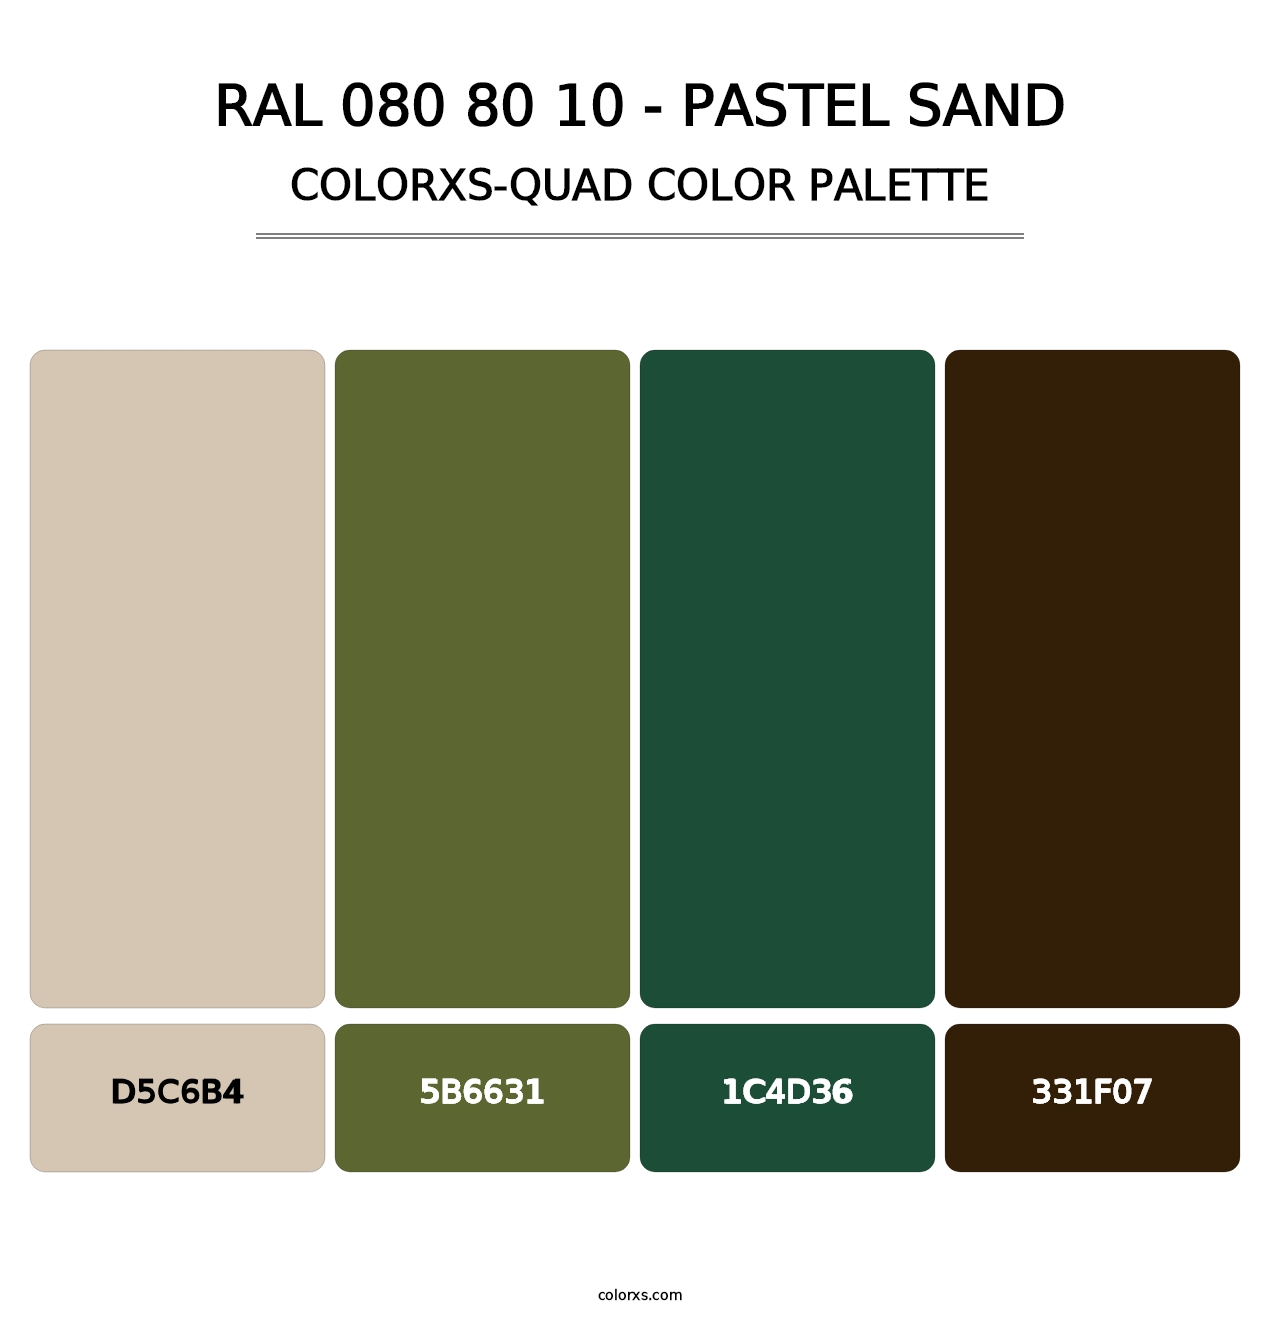 RAL 080 80 10 - Pastel Sand - Colorxs Quad Palette